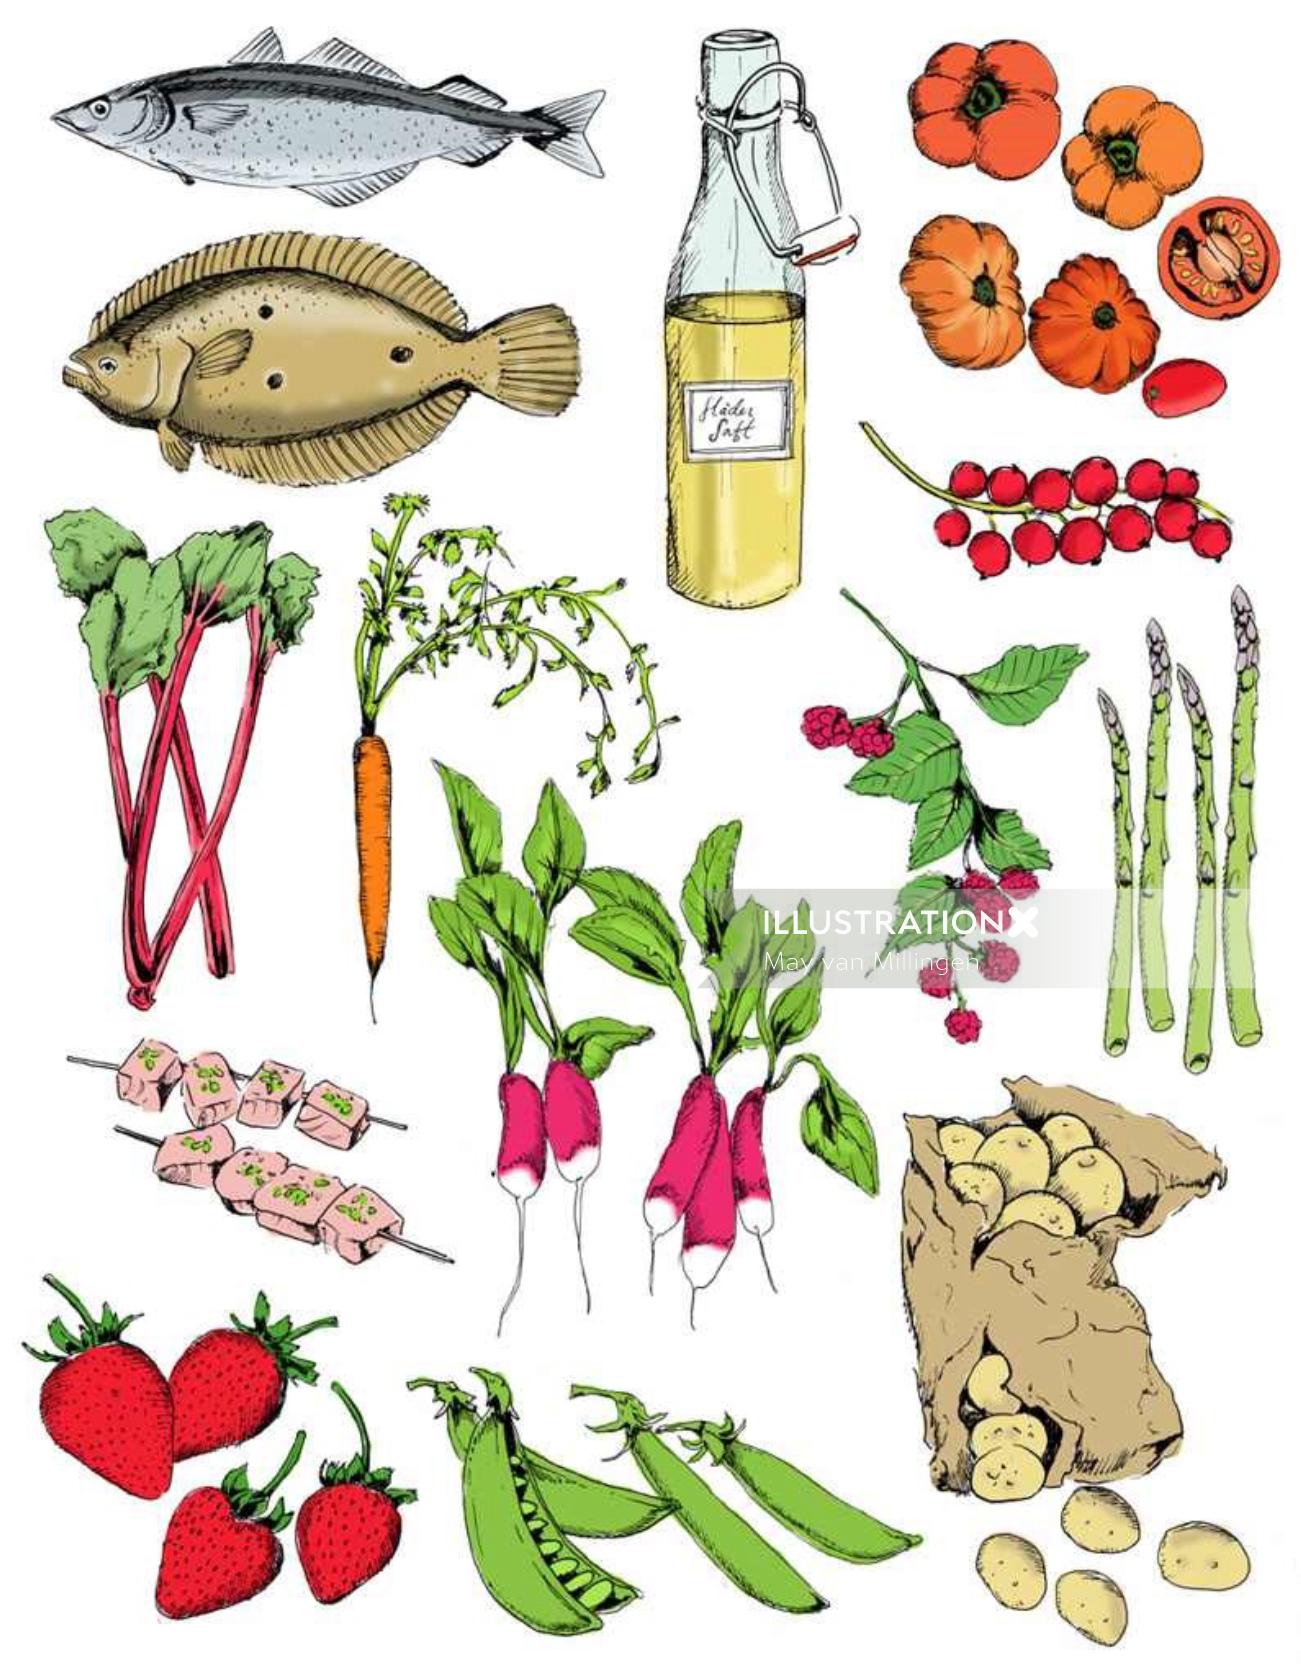 メイ・ヴァン・ミリンゲンによる食べ物のイラスト